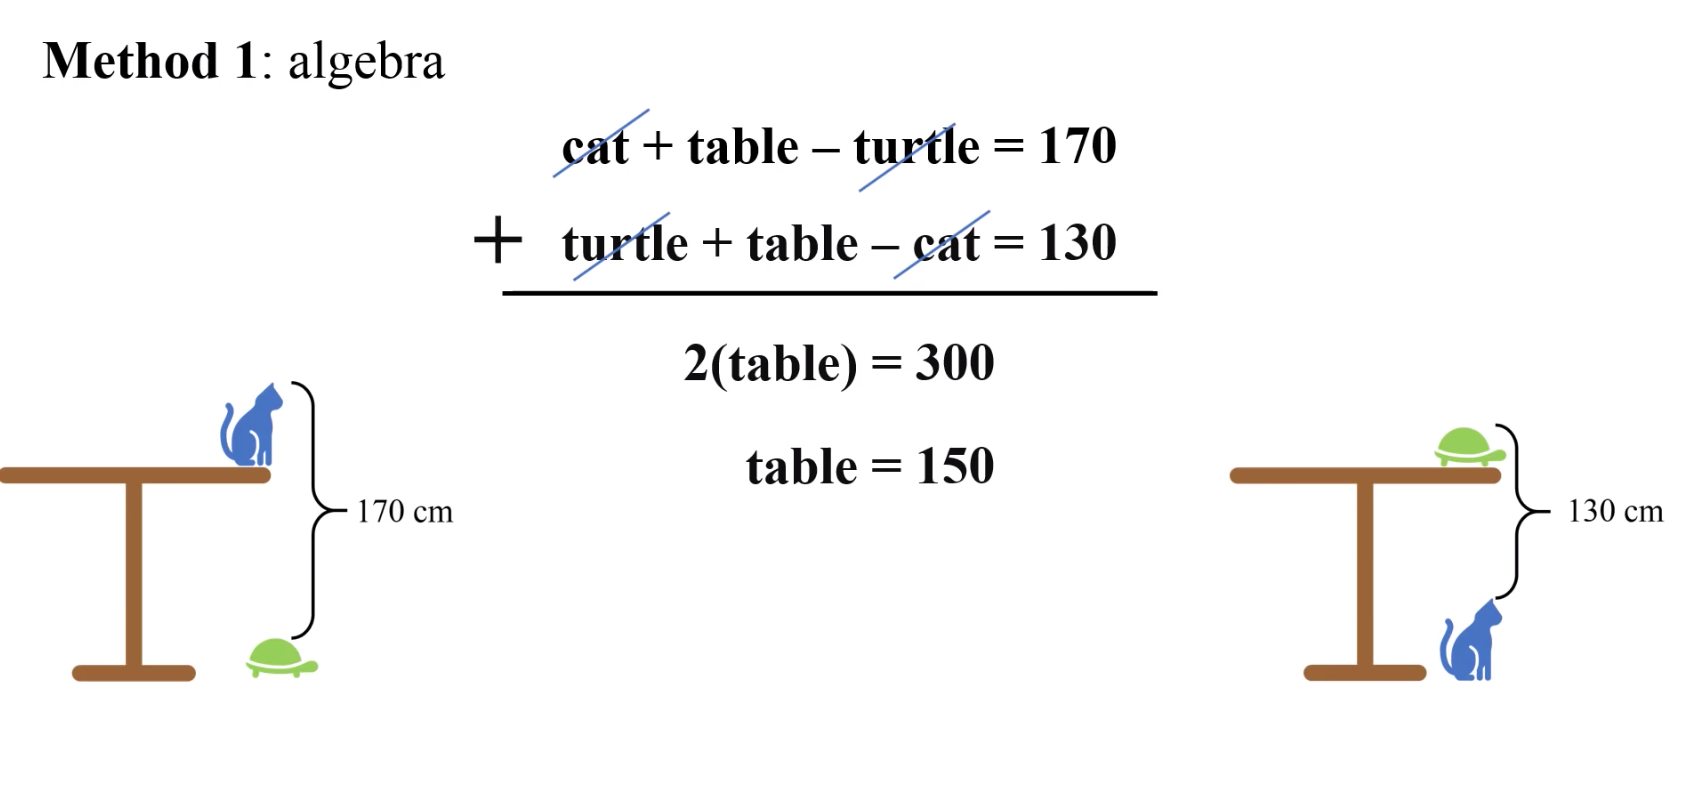 Задача высота стола. Задача высота стола кот черепаха. Задача для китайских школьников про высоту стола. Простая задача для китайских школьников высота стола. Решение задачи про высоту стола с котом и черепахой.